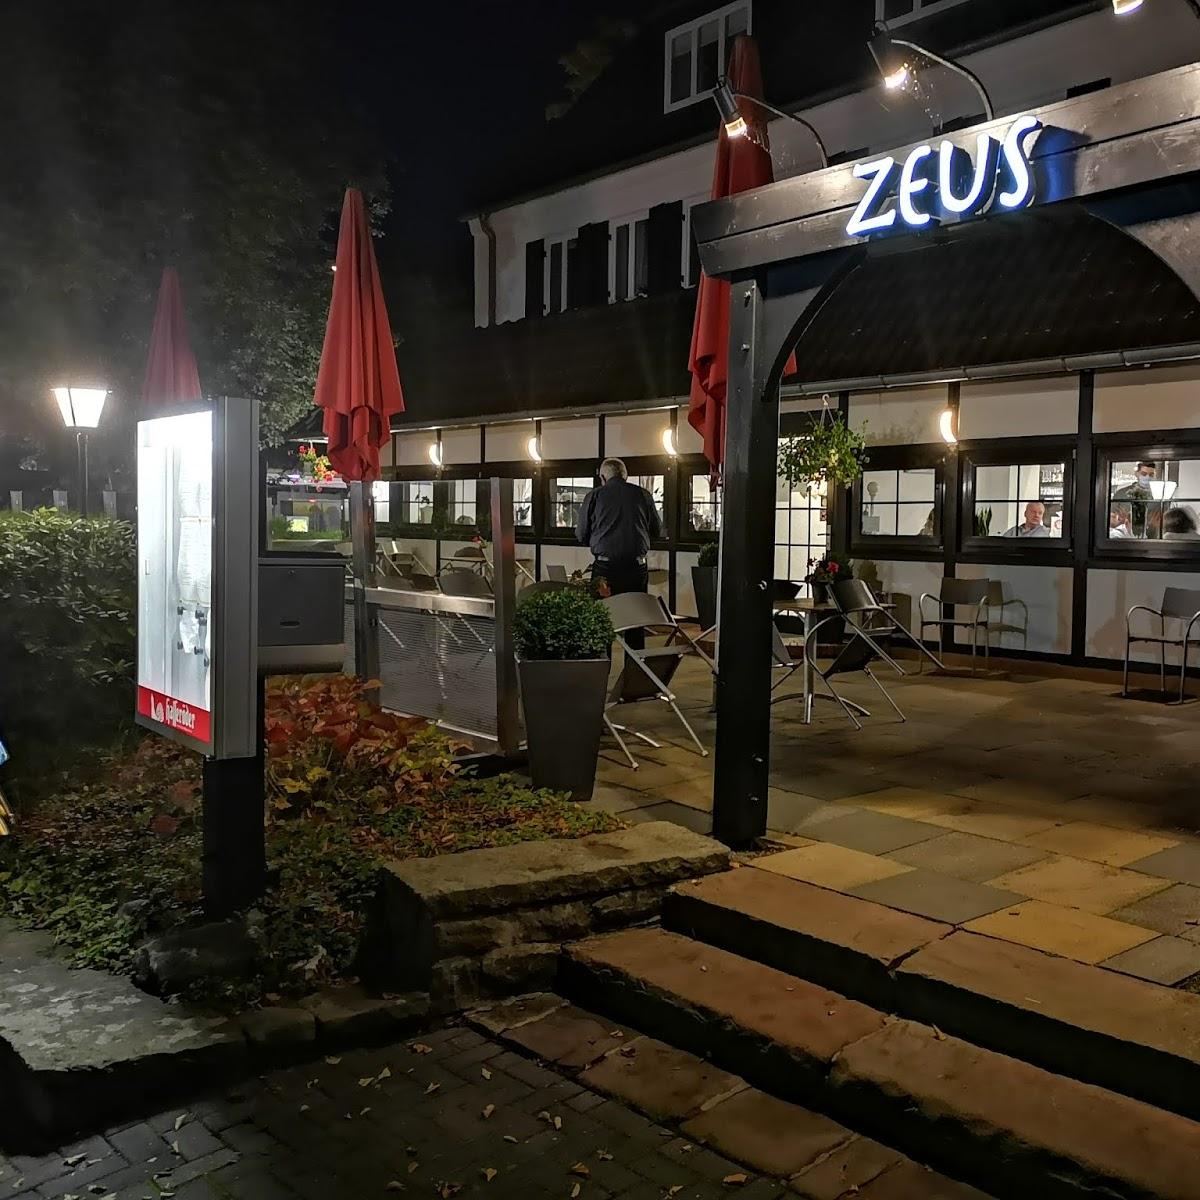 Restaurant "Hotel Restaurant Zeus" in  Wolfsburg